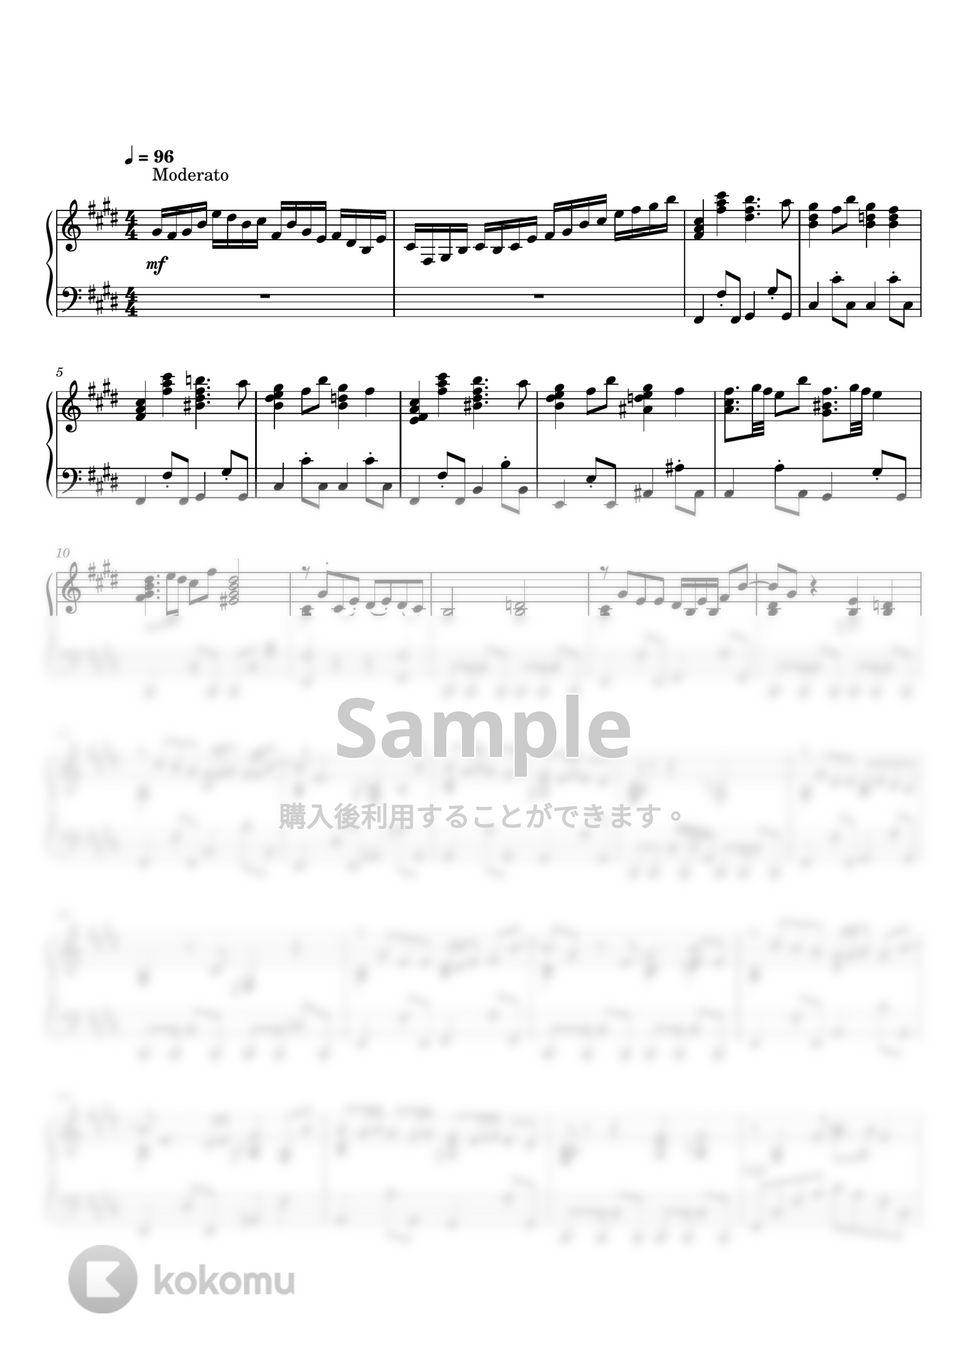 藤井風 - まつり (上級ピアノ) by 牛武奏人